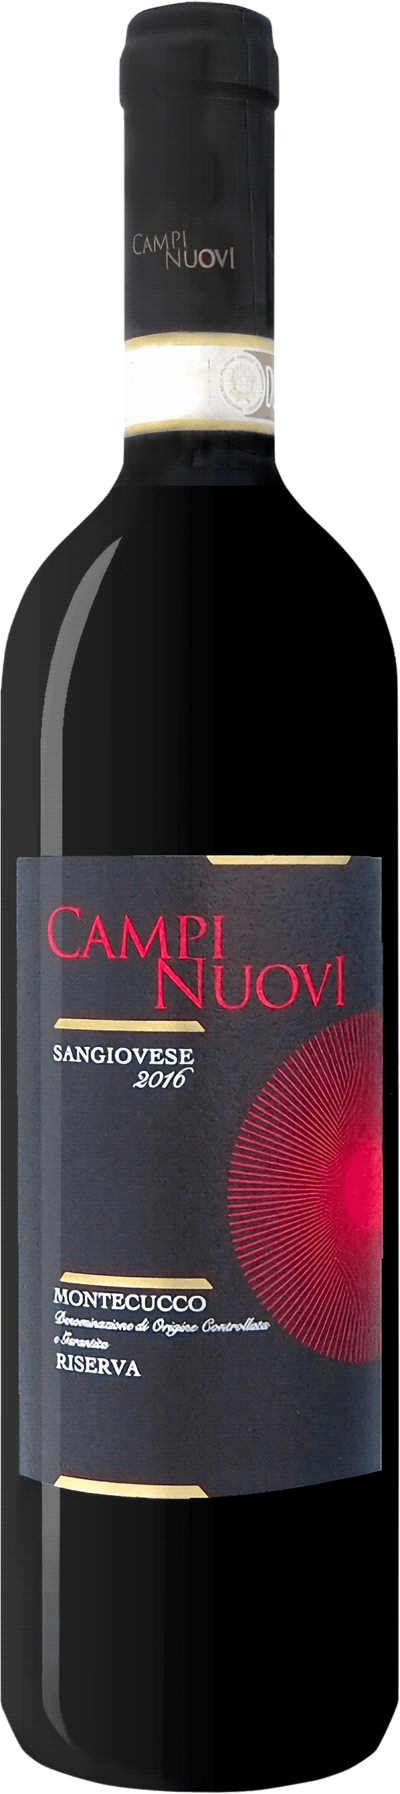 Campinuovi Montecucco Sangiovese Riserva 2016